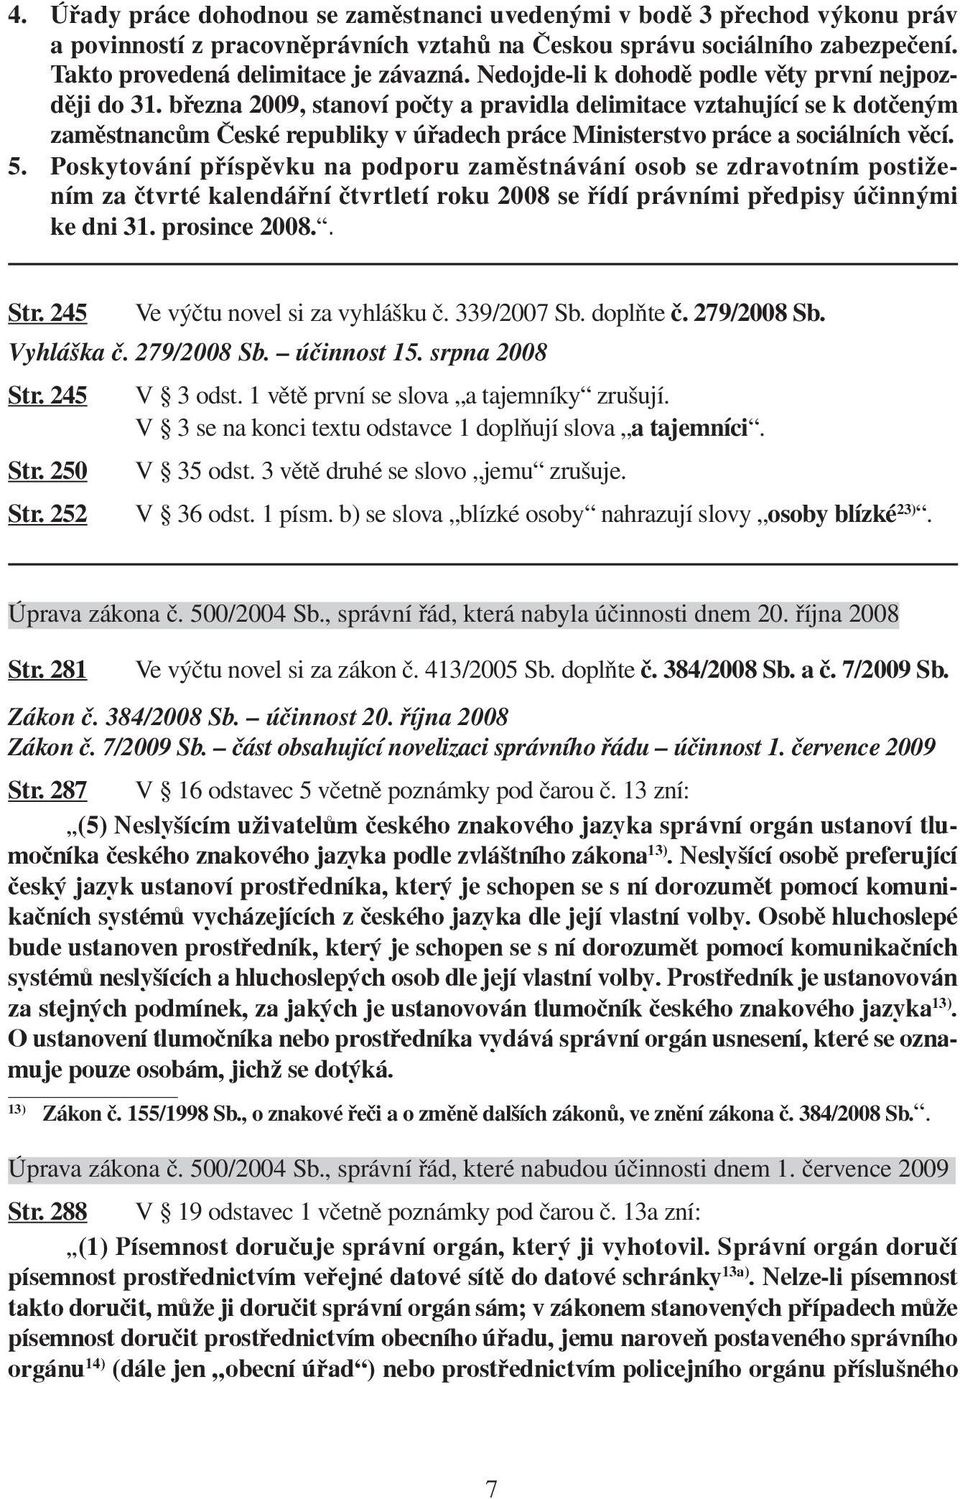 března 2009, stanoví počty a pravidla delimitace vztahující se k dotčeným zaměstnancům České republiky v úřadech práce Ministerstvo práce a sociálních věcí. 5.